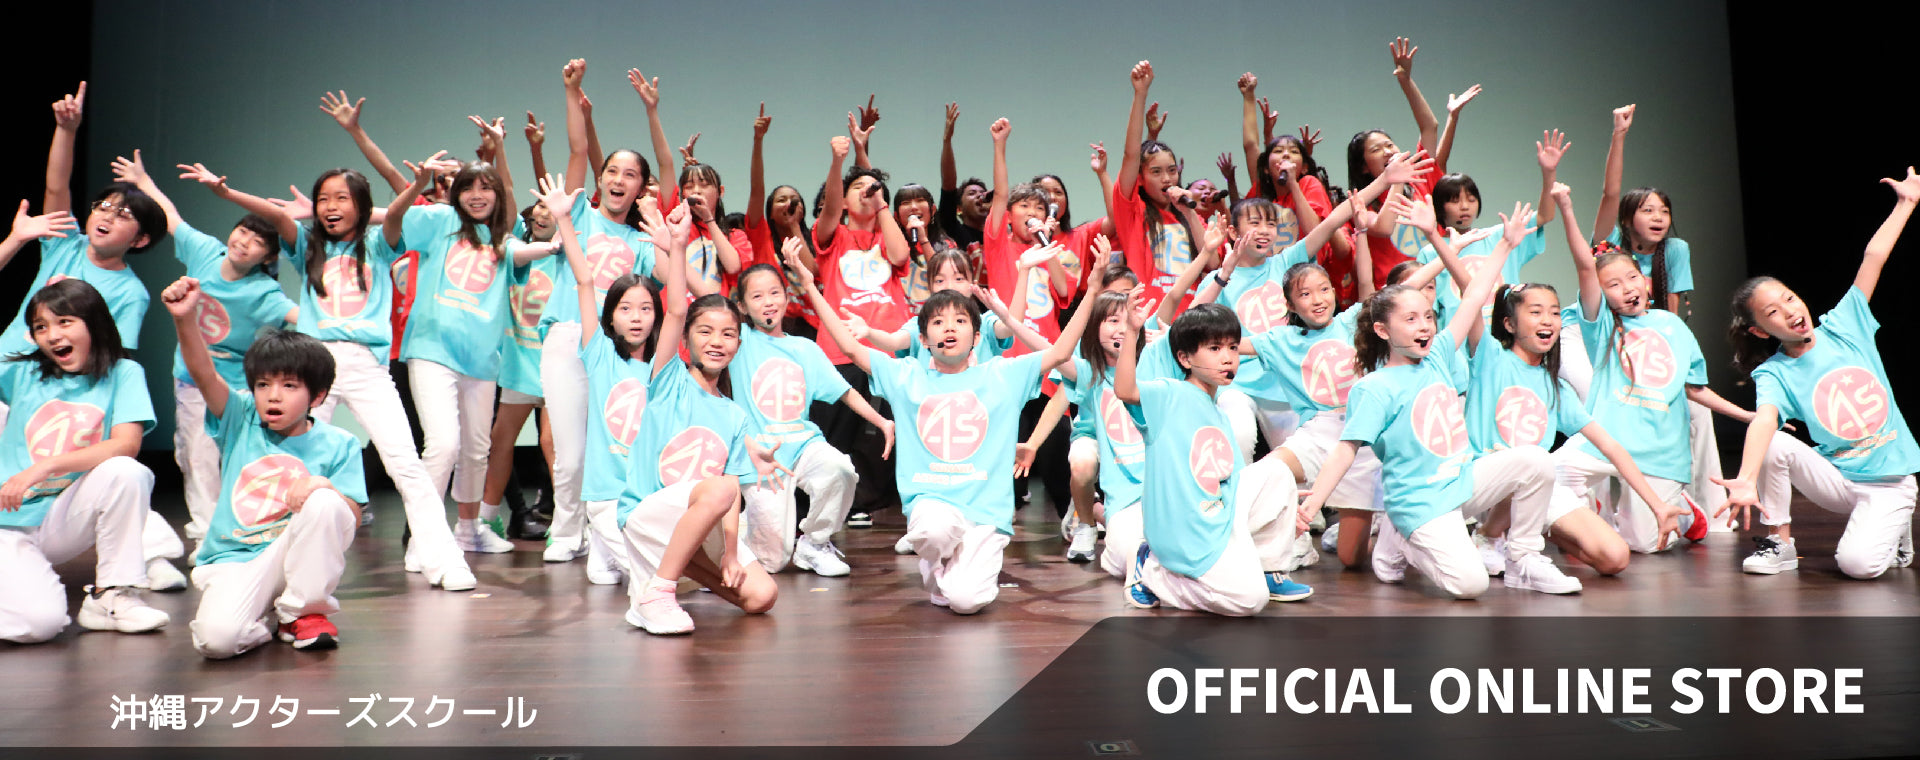 Okinawa Actors School Official Online Store – Okinawa Actors